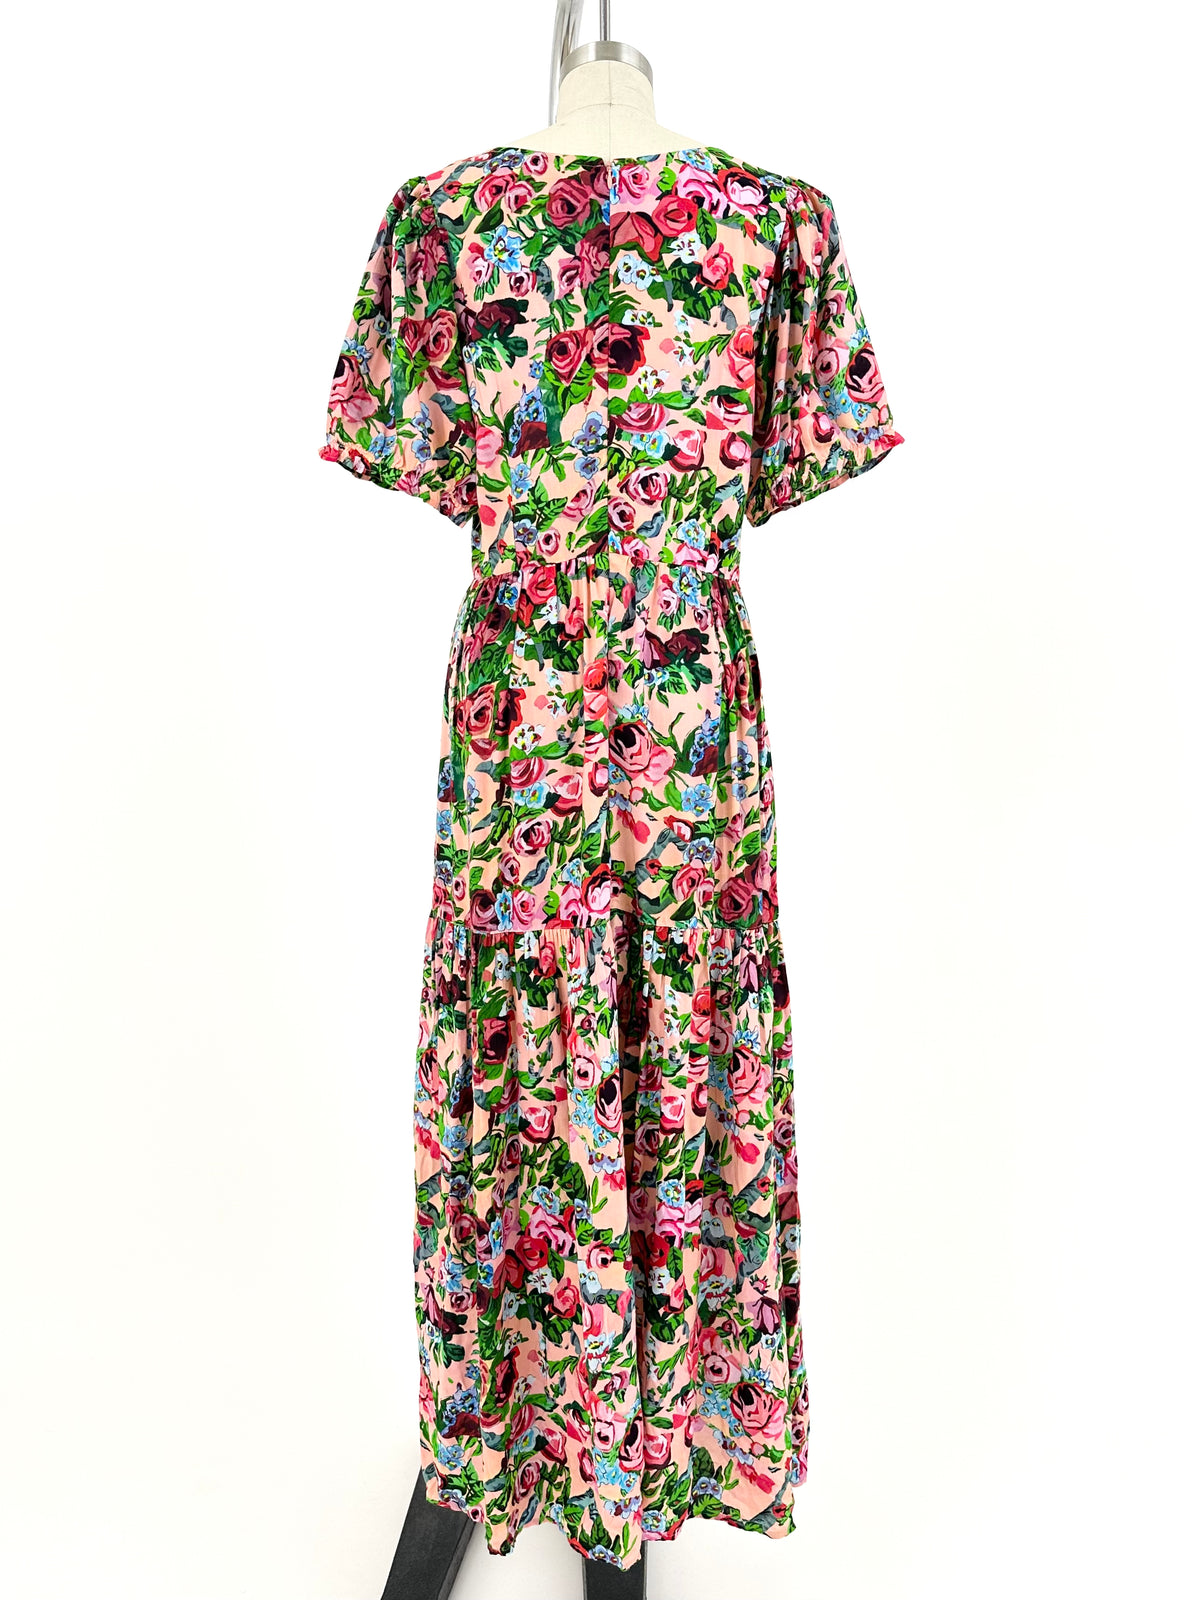 Samantha Pleet Floral Cutout Dress | Mercy Vintage